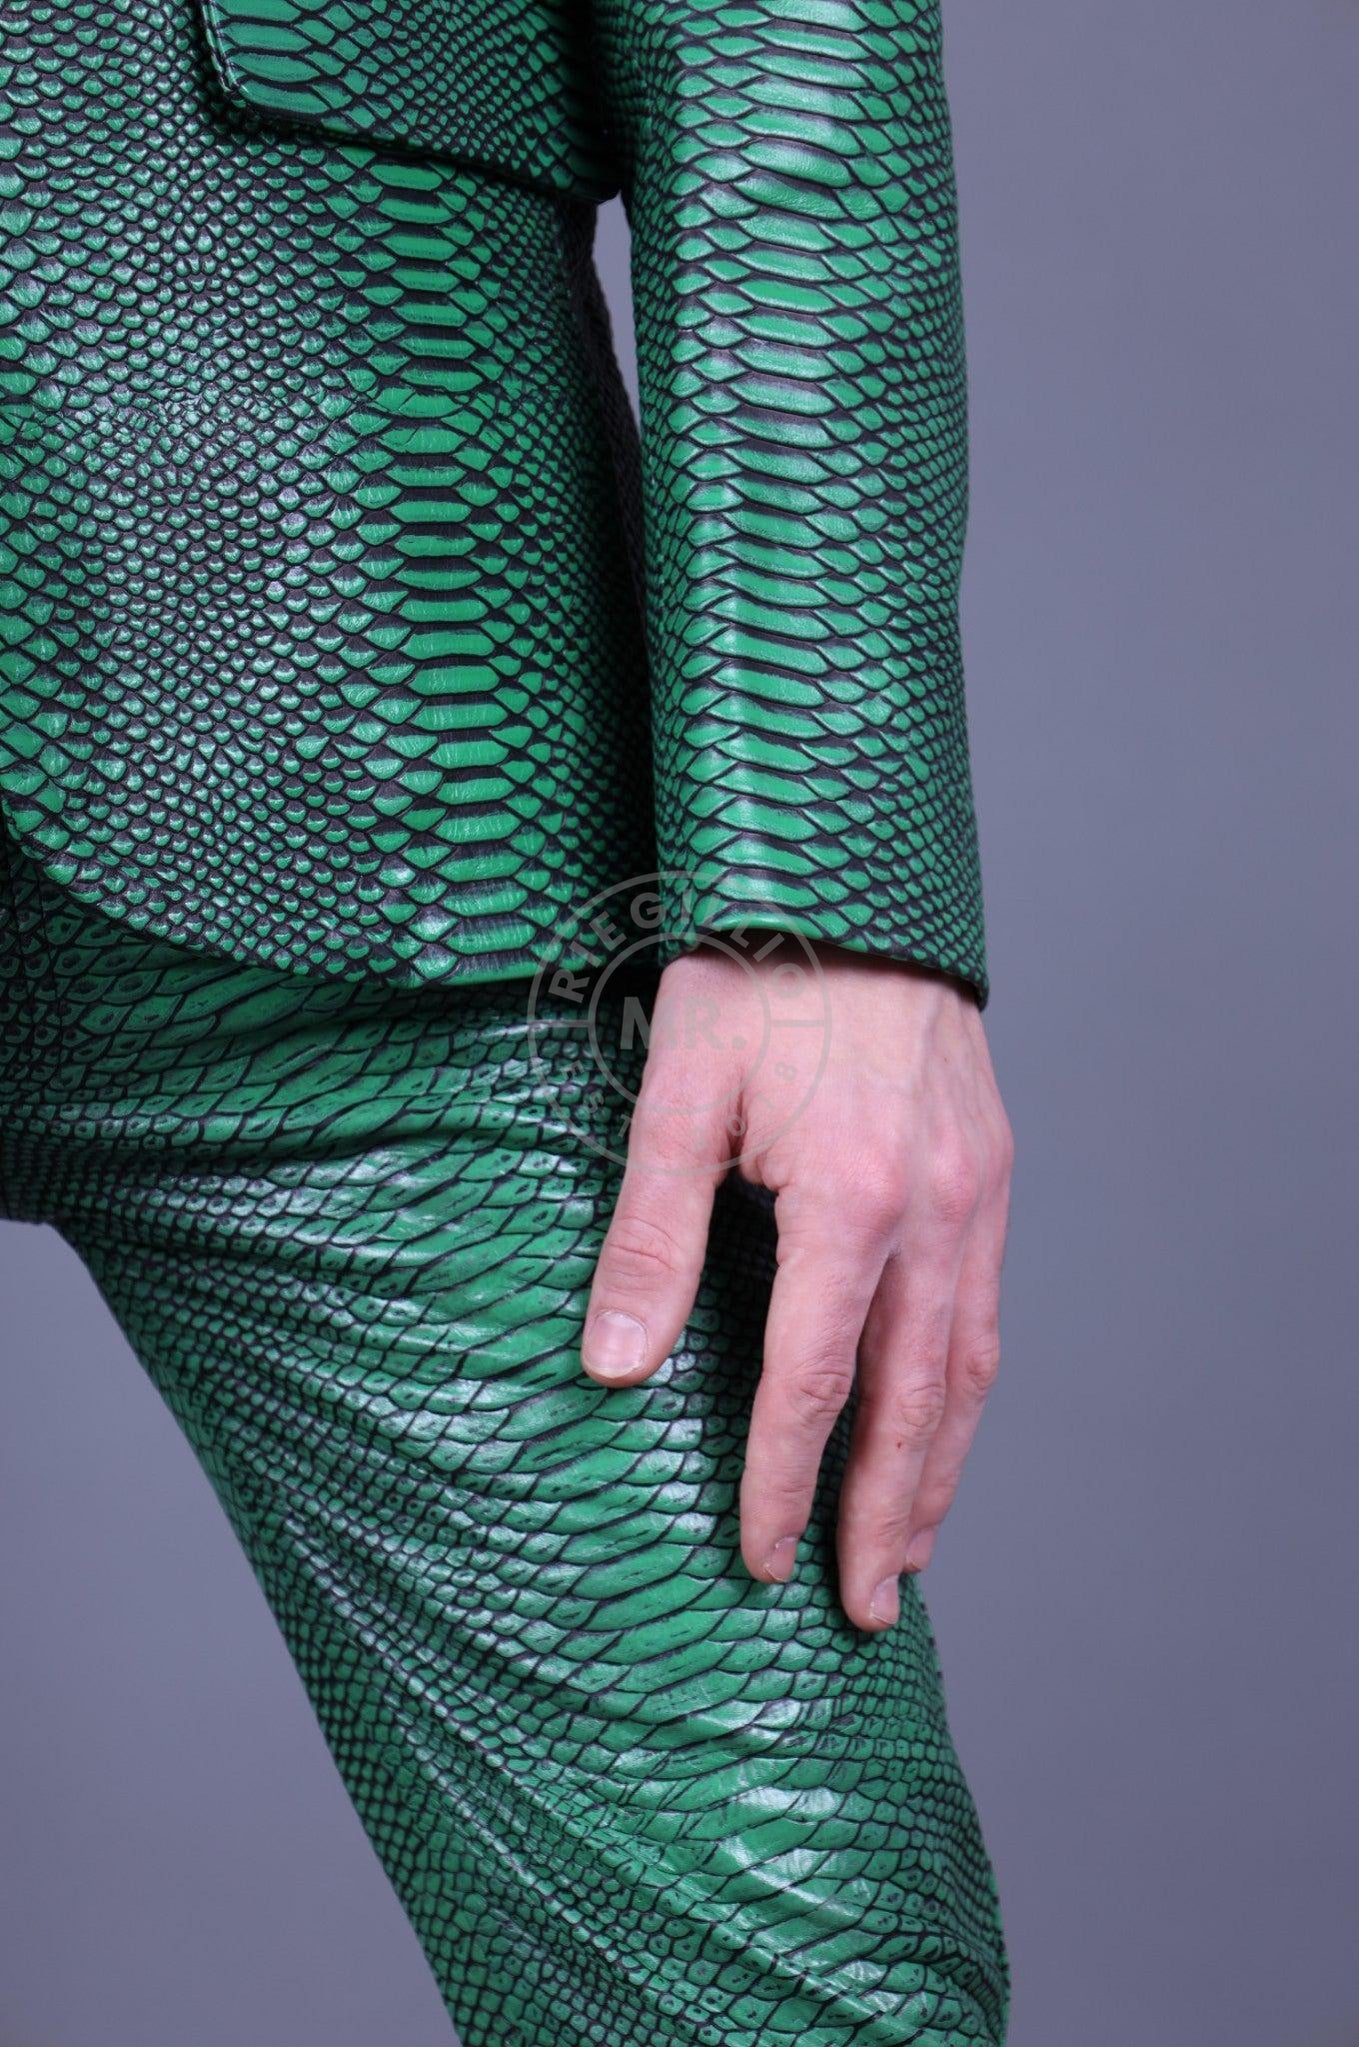 Green Leather Snake Blazer at MR. Riegillio